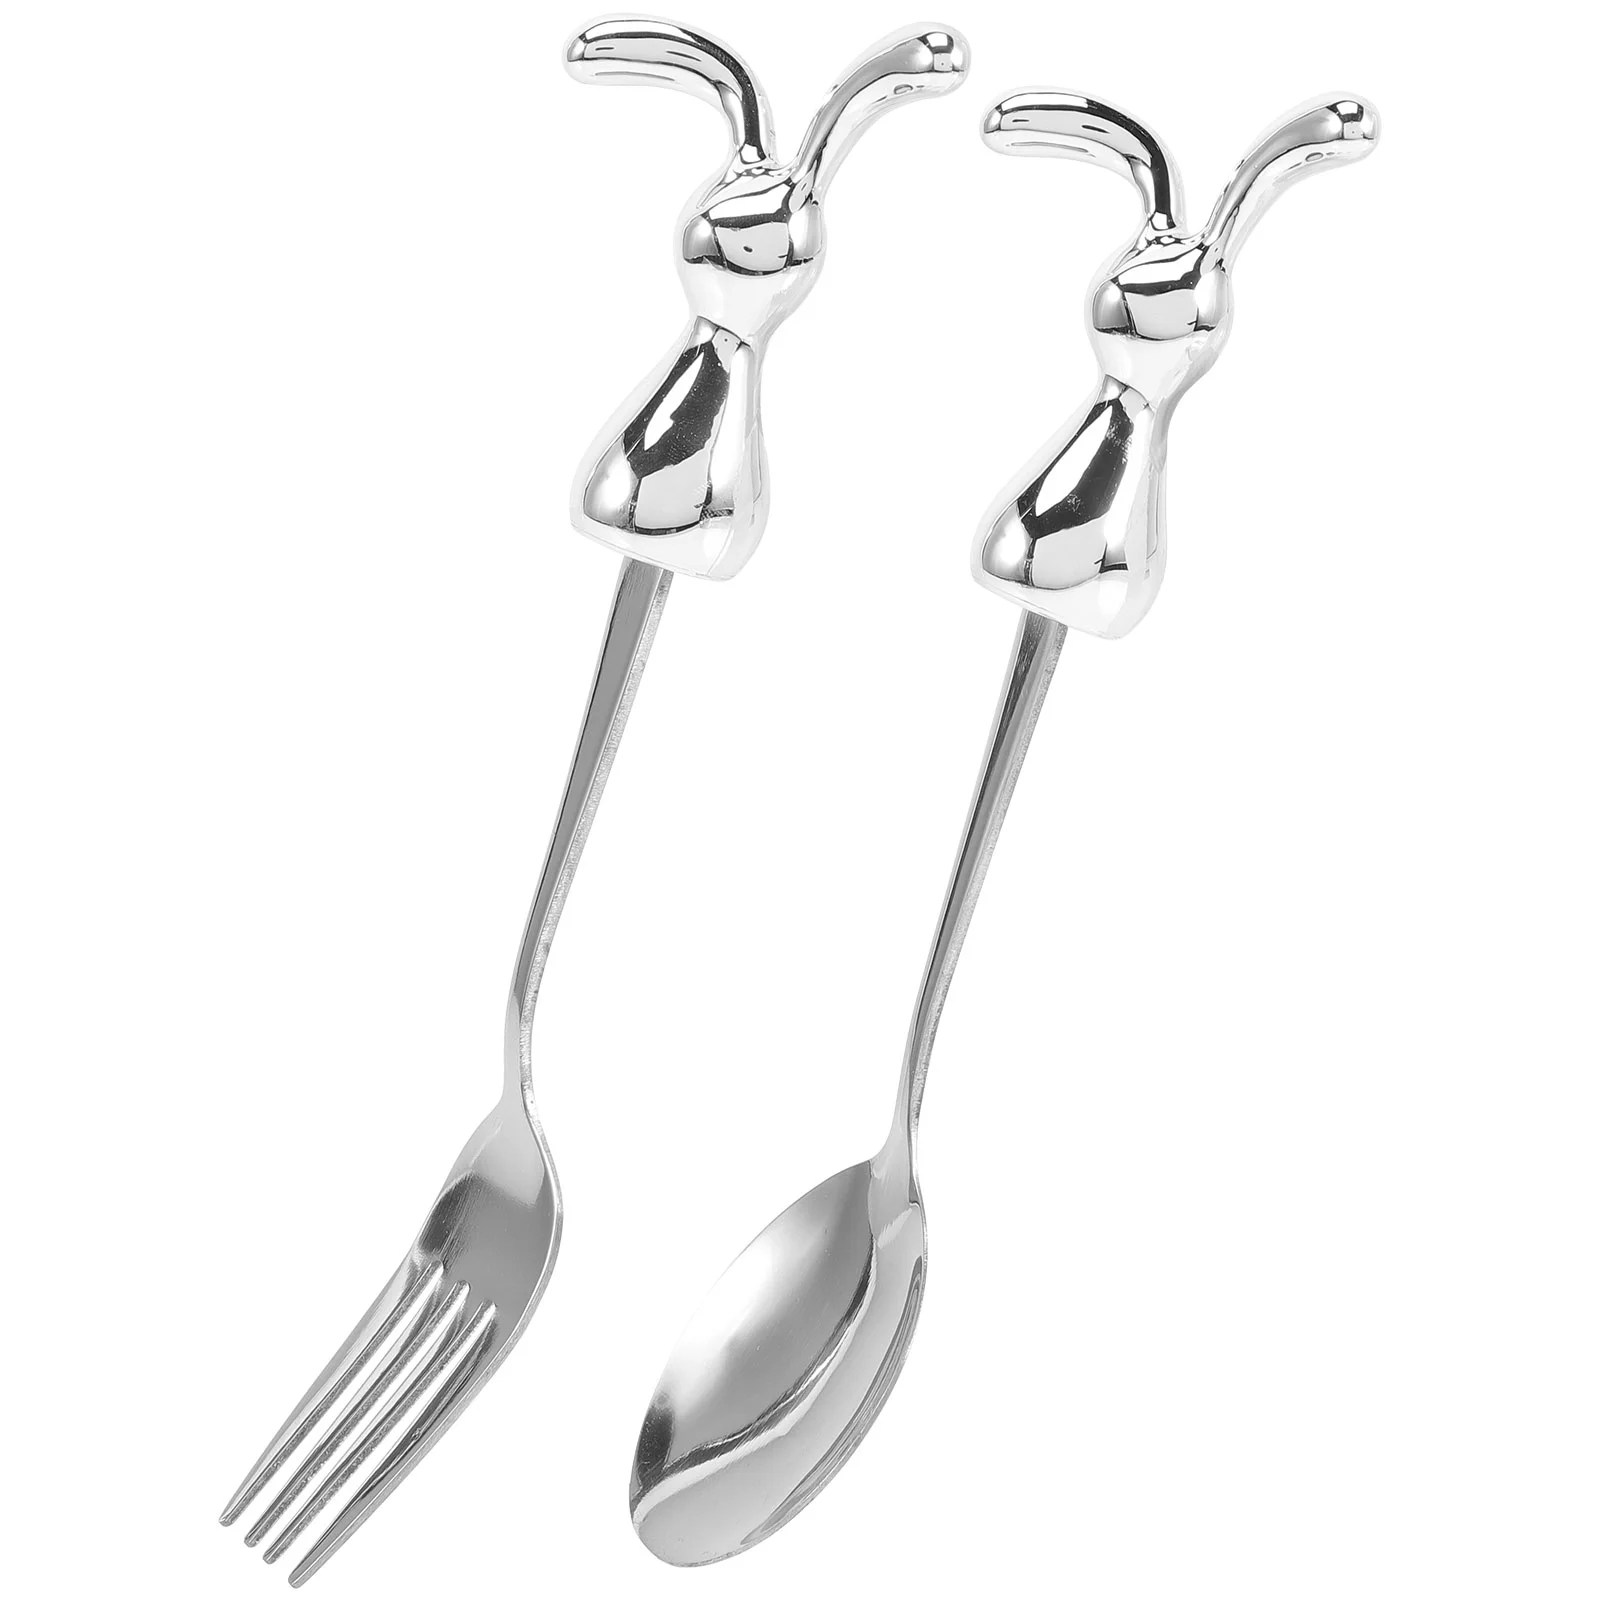 Set Spoon Easter Fork Spoons Forks Rabbit Cutlery Year Silverware Utensils Fruit Dessert Steel Kids Stainless Drink Serving